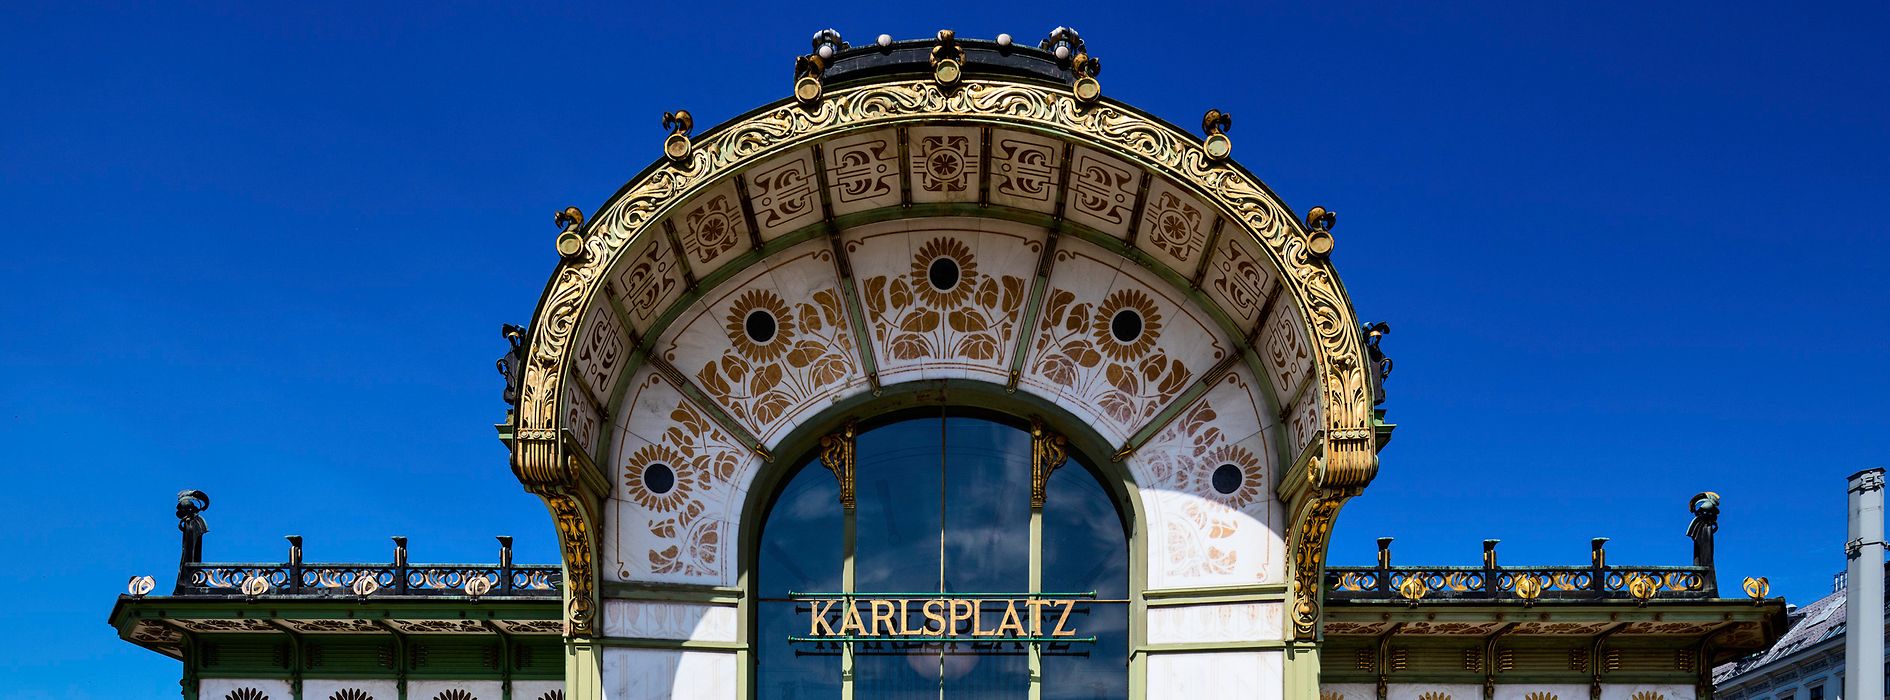 Otto Wagner Pavilion, Karlsplatz 